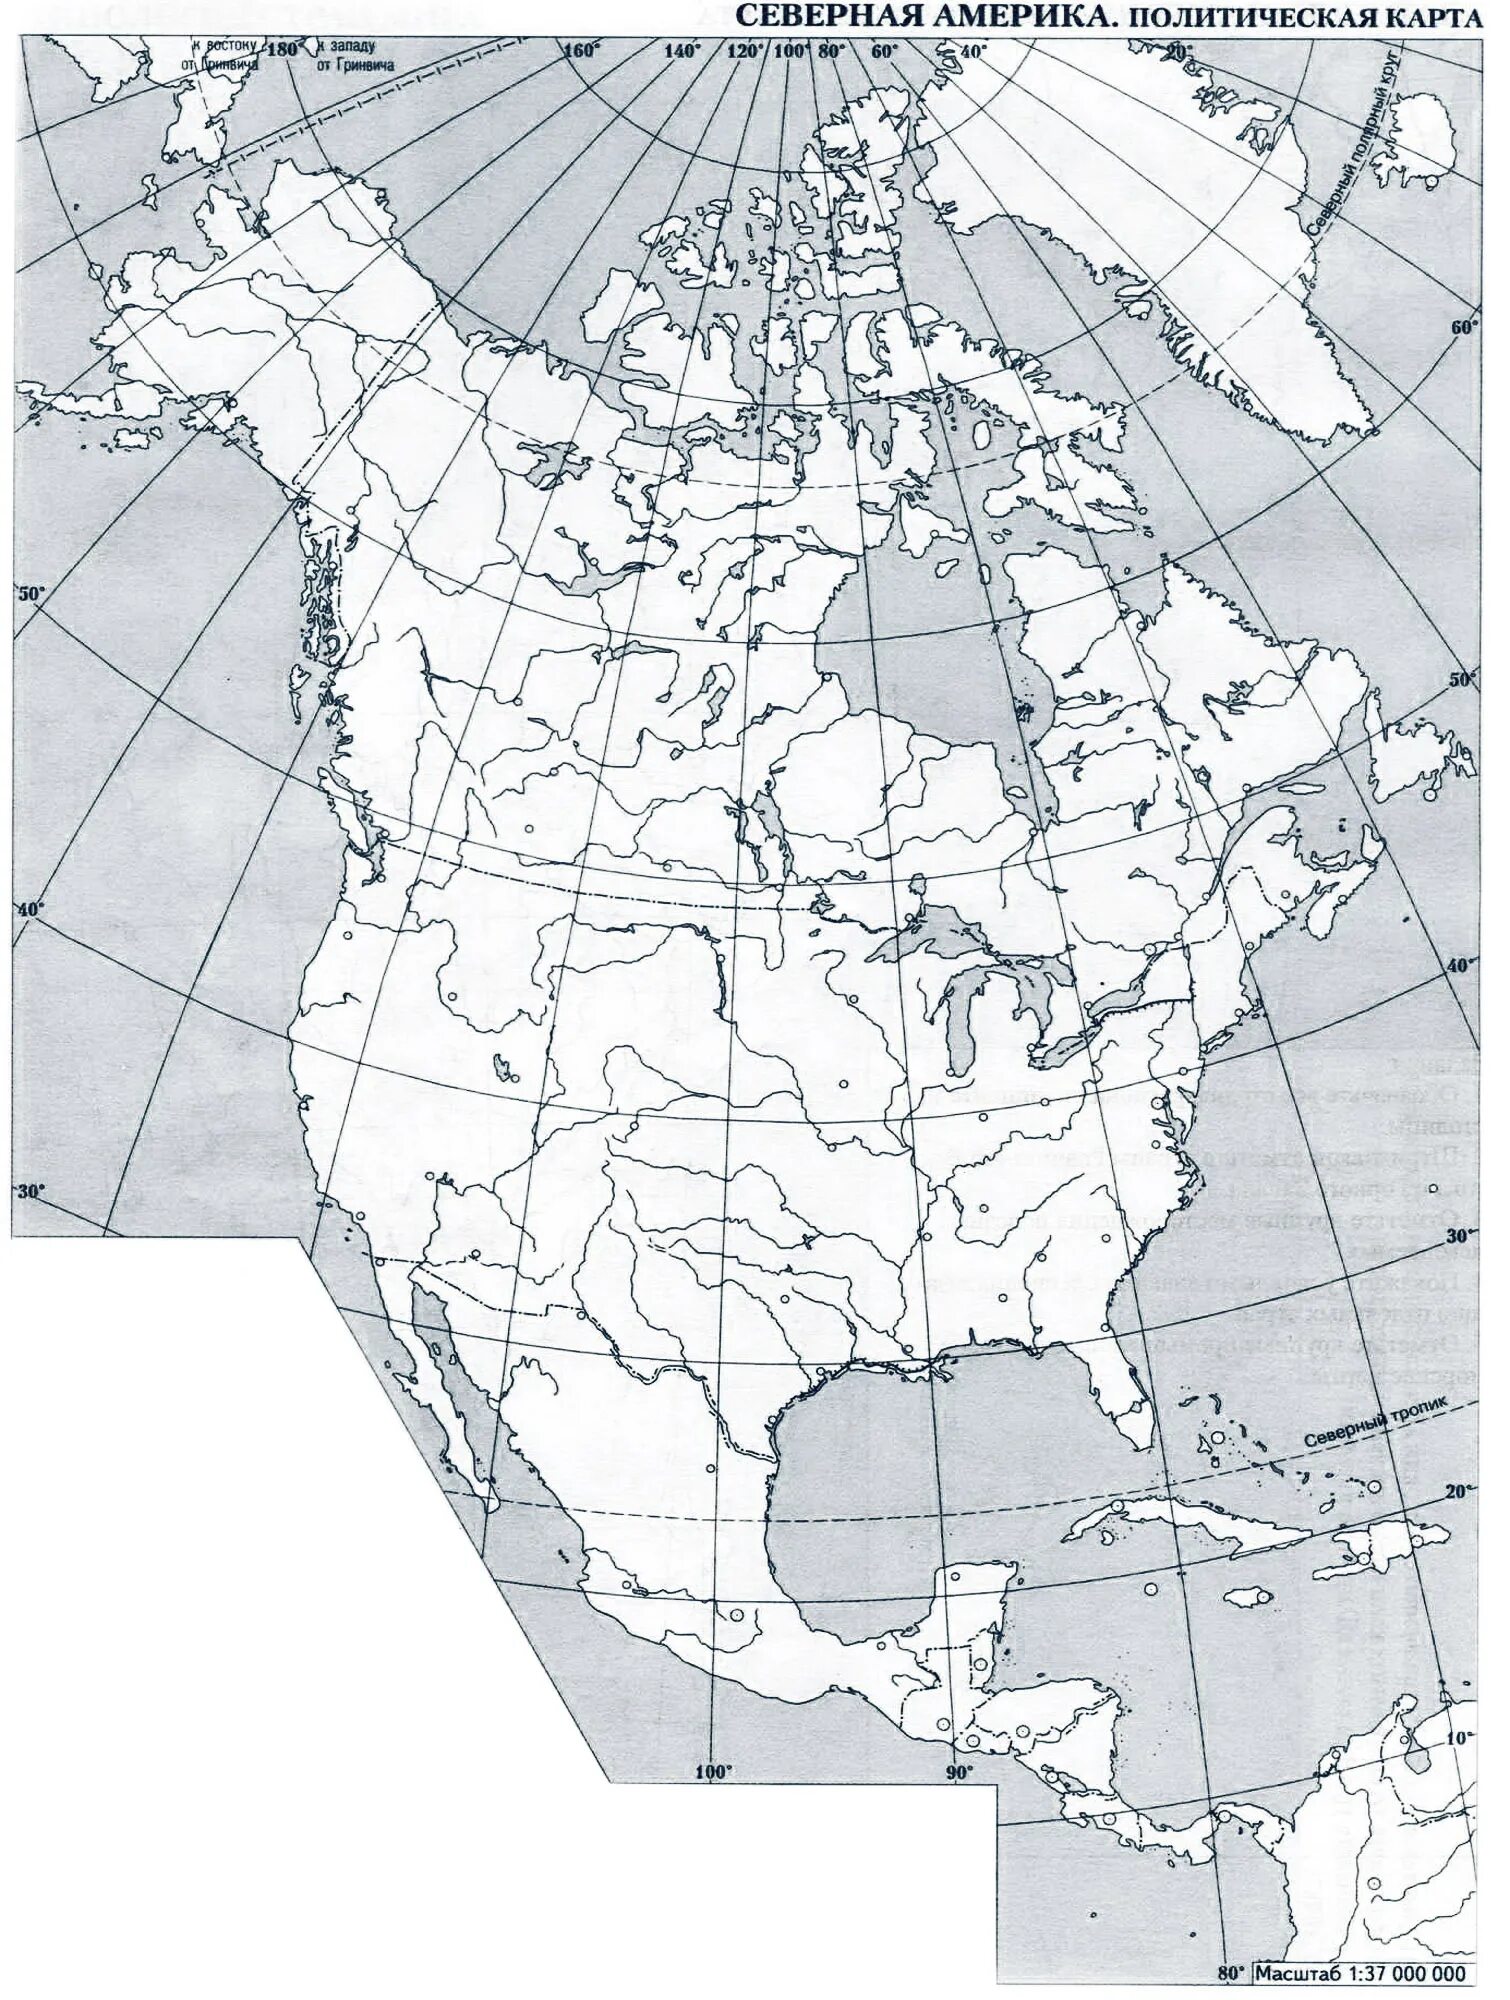 Контрольная работа северная америка 7. Физическая карта Северной Америки контурная карта. Пустая карта Северной Америки. Карта Северной Америки контурная карта 7 класс. Политическая контурная карта Северной Америки.